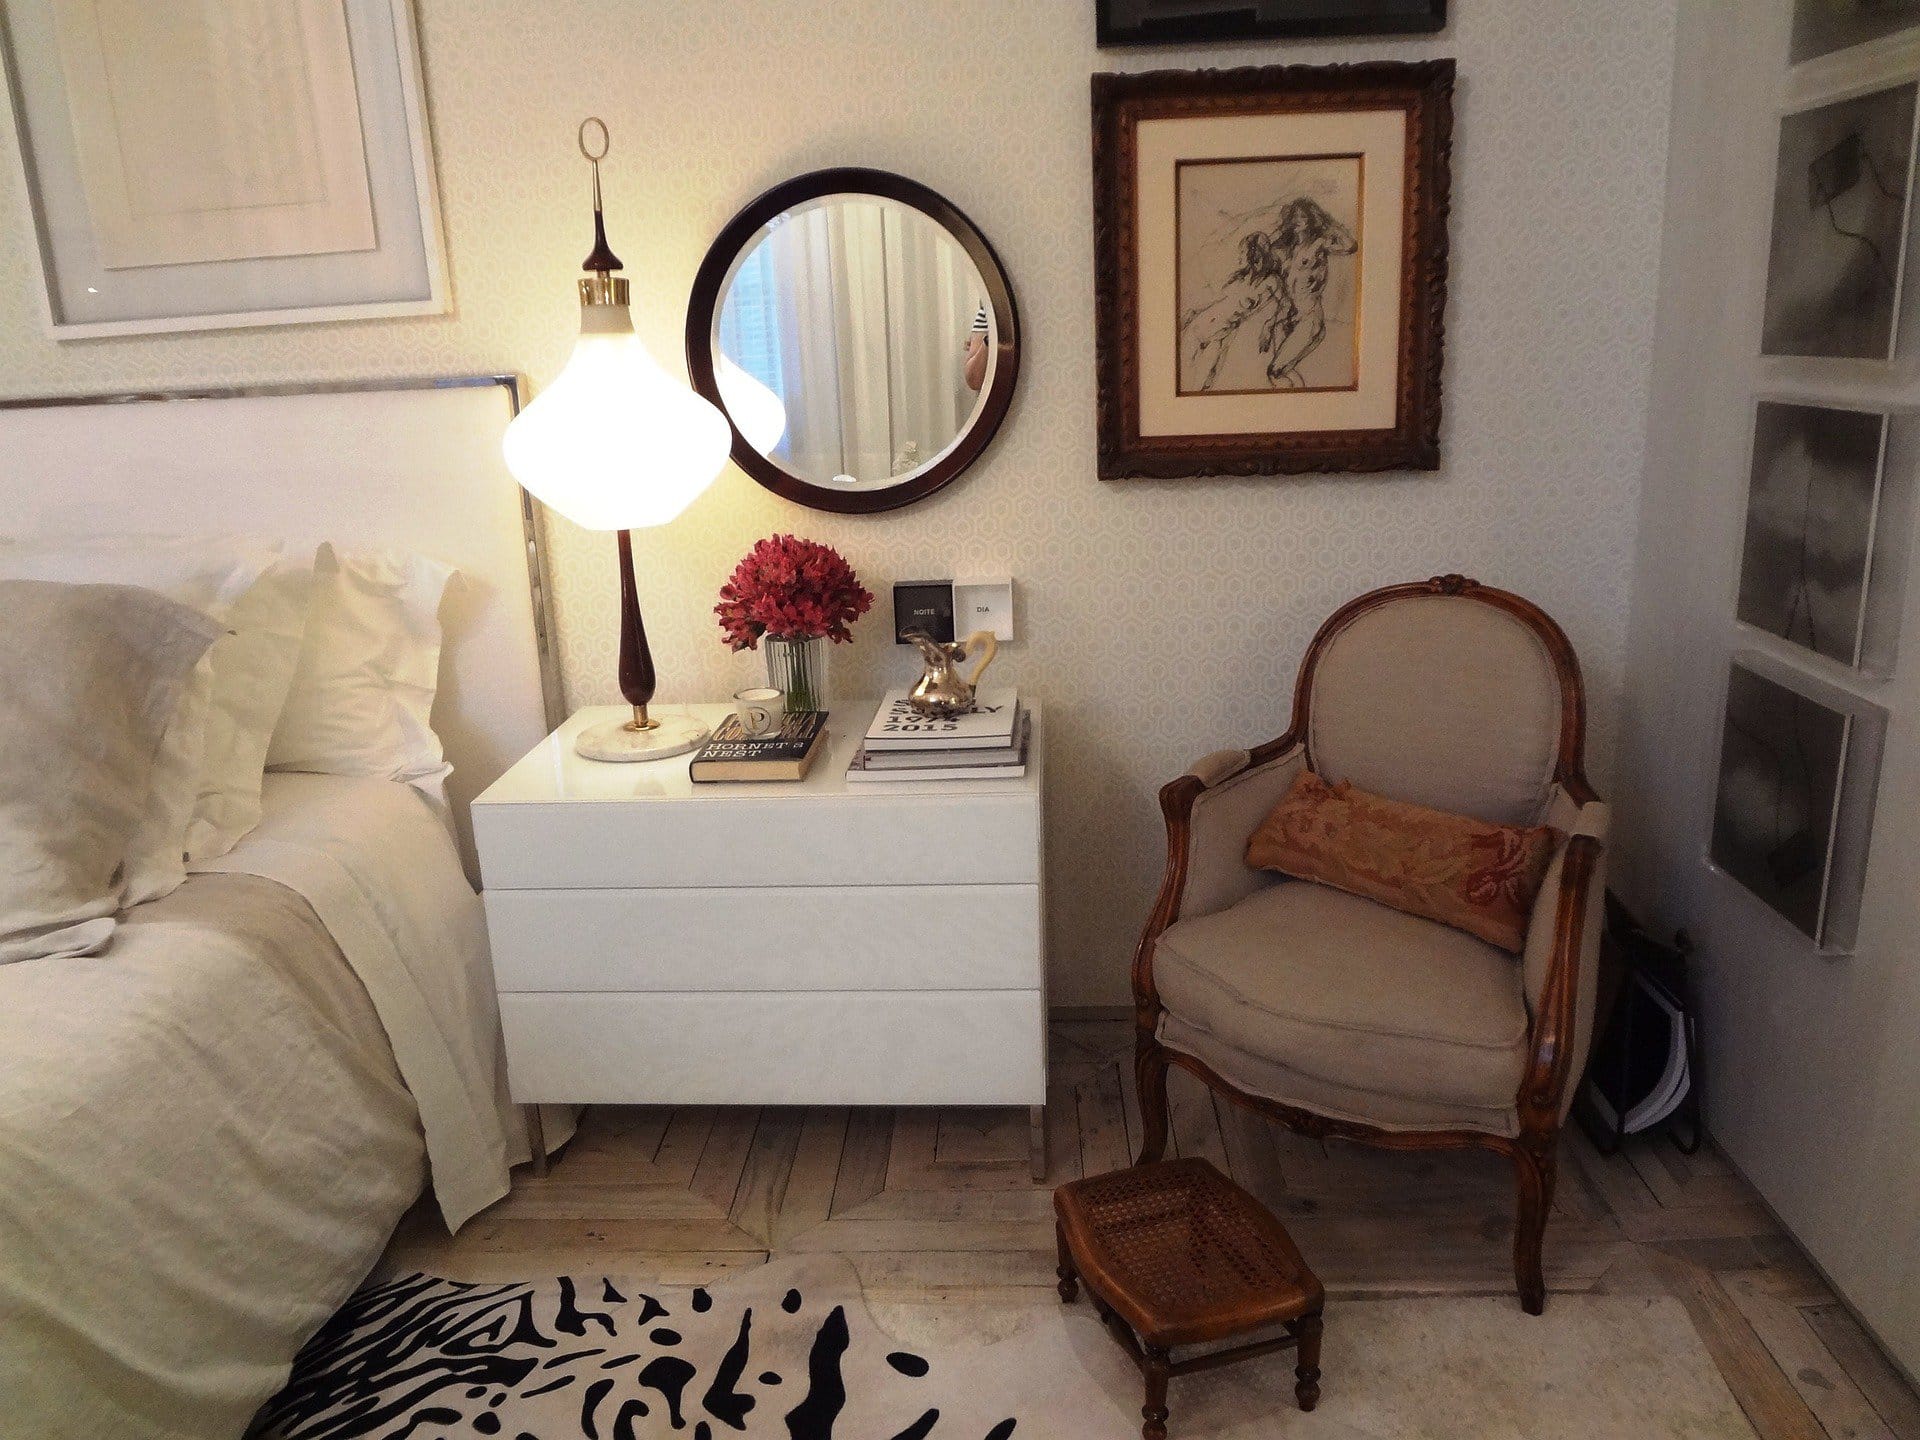  Modern and Vintage Bedroom Furniture